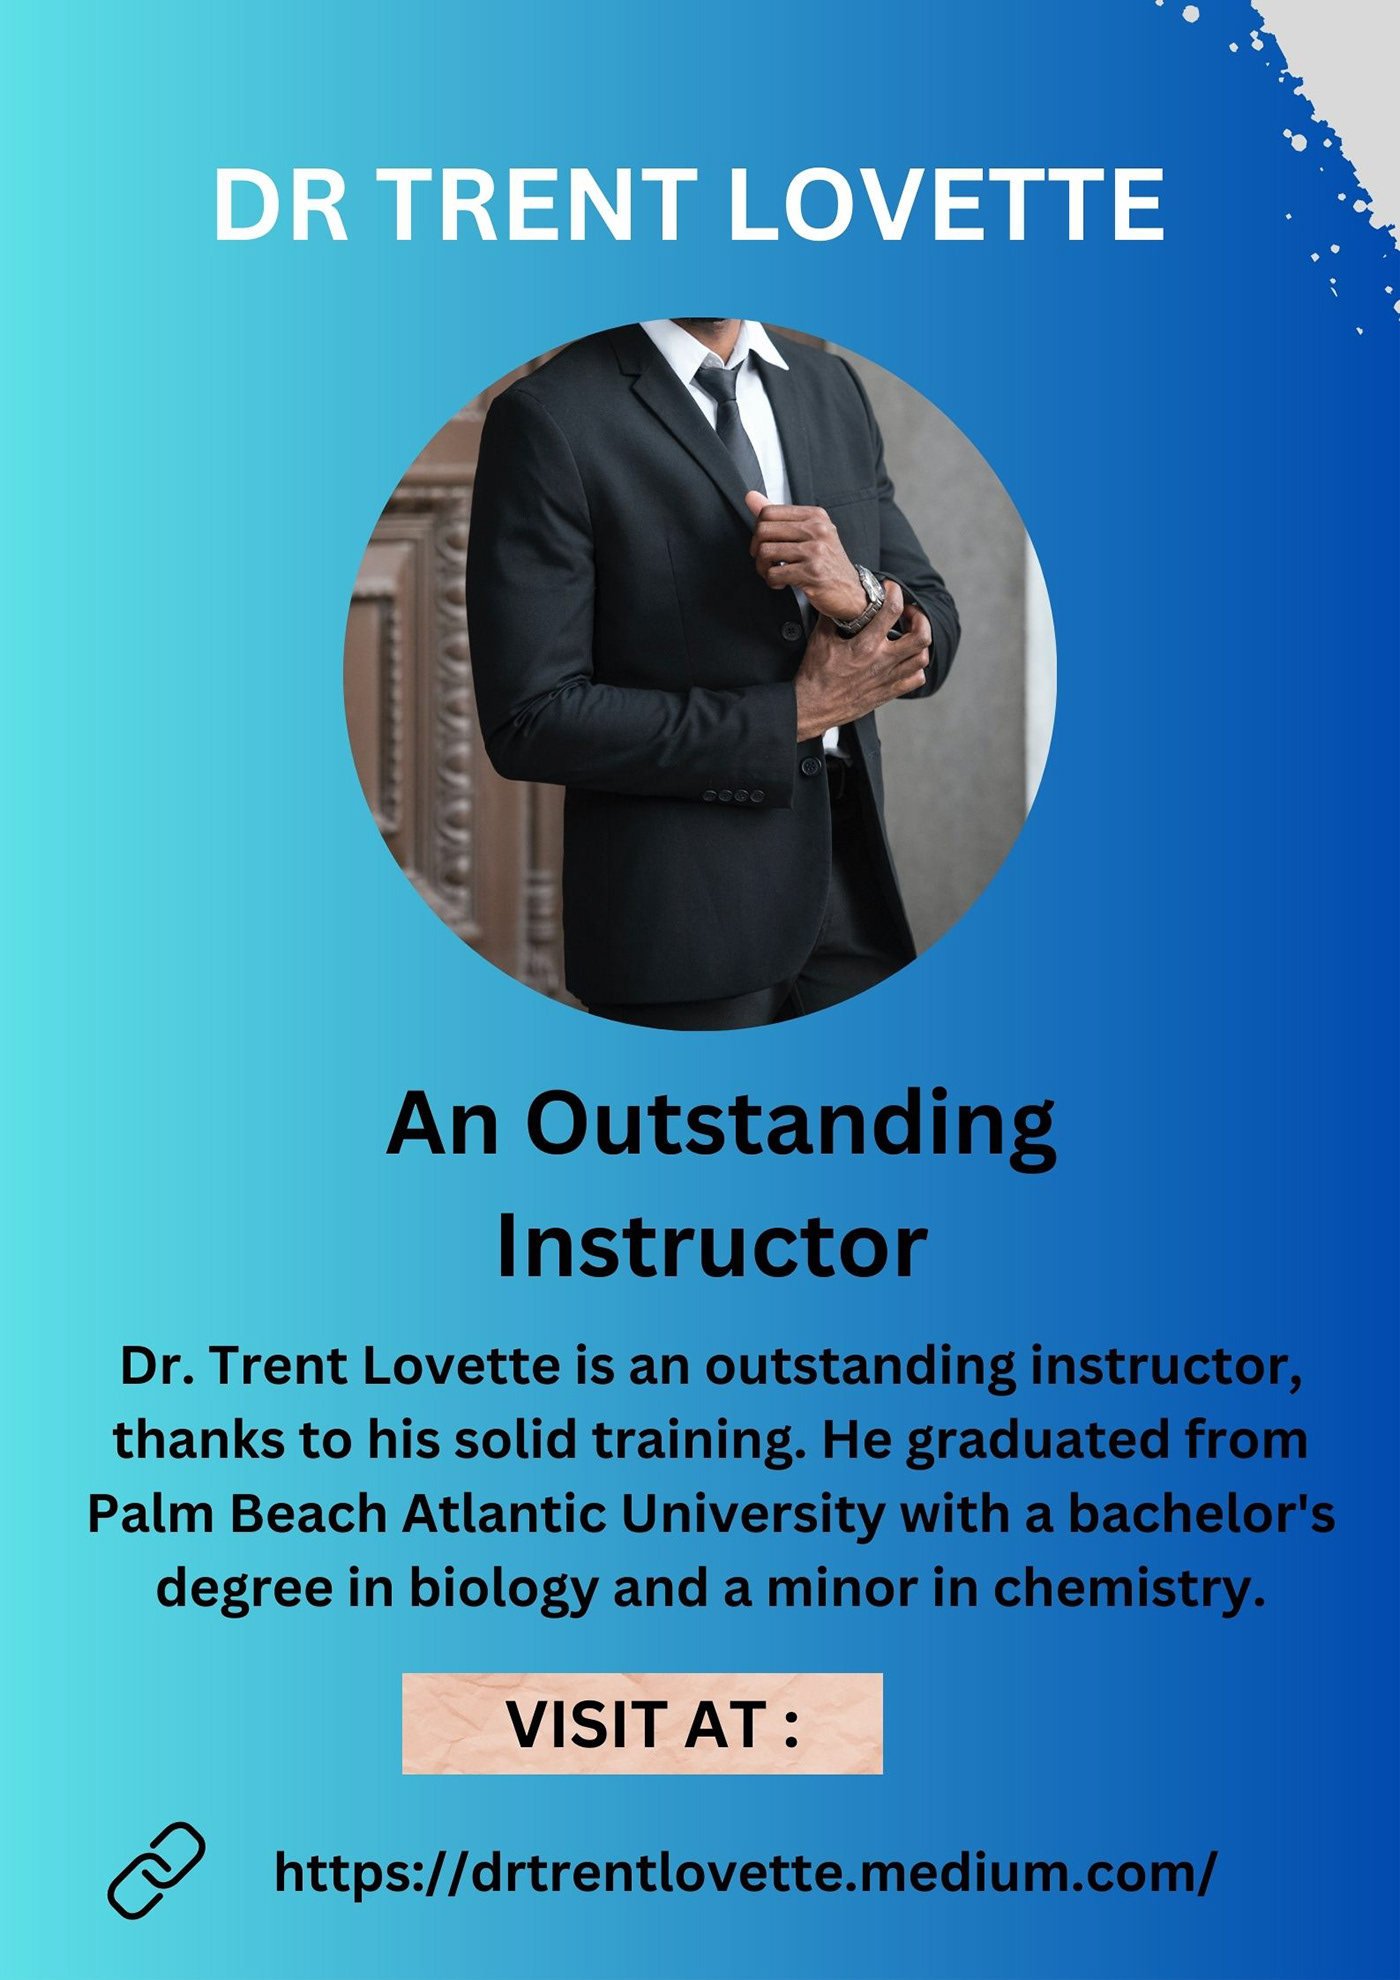 Decatur Dr Trent Lovette drtrentlovette Instructor lecturer texas